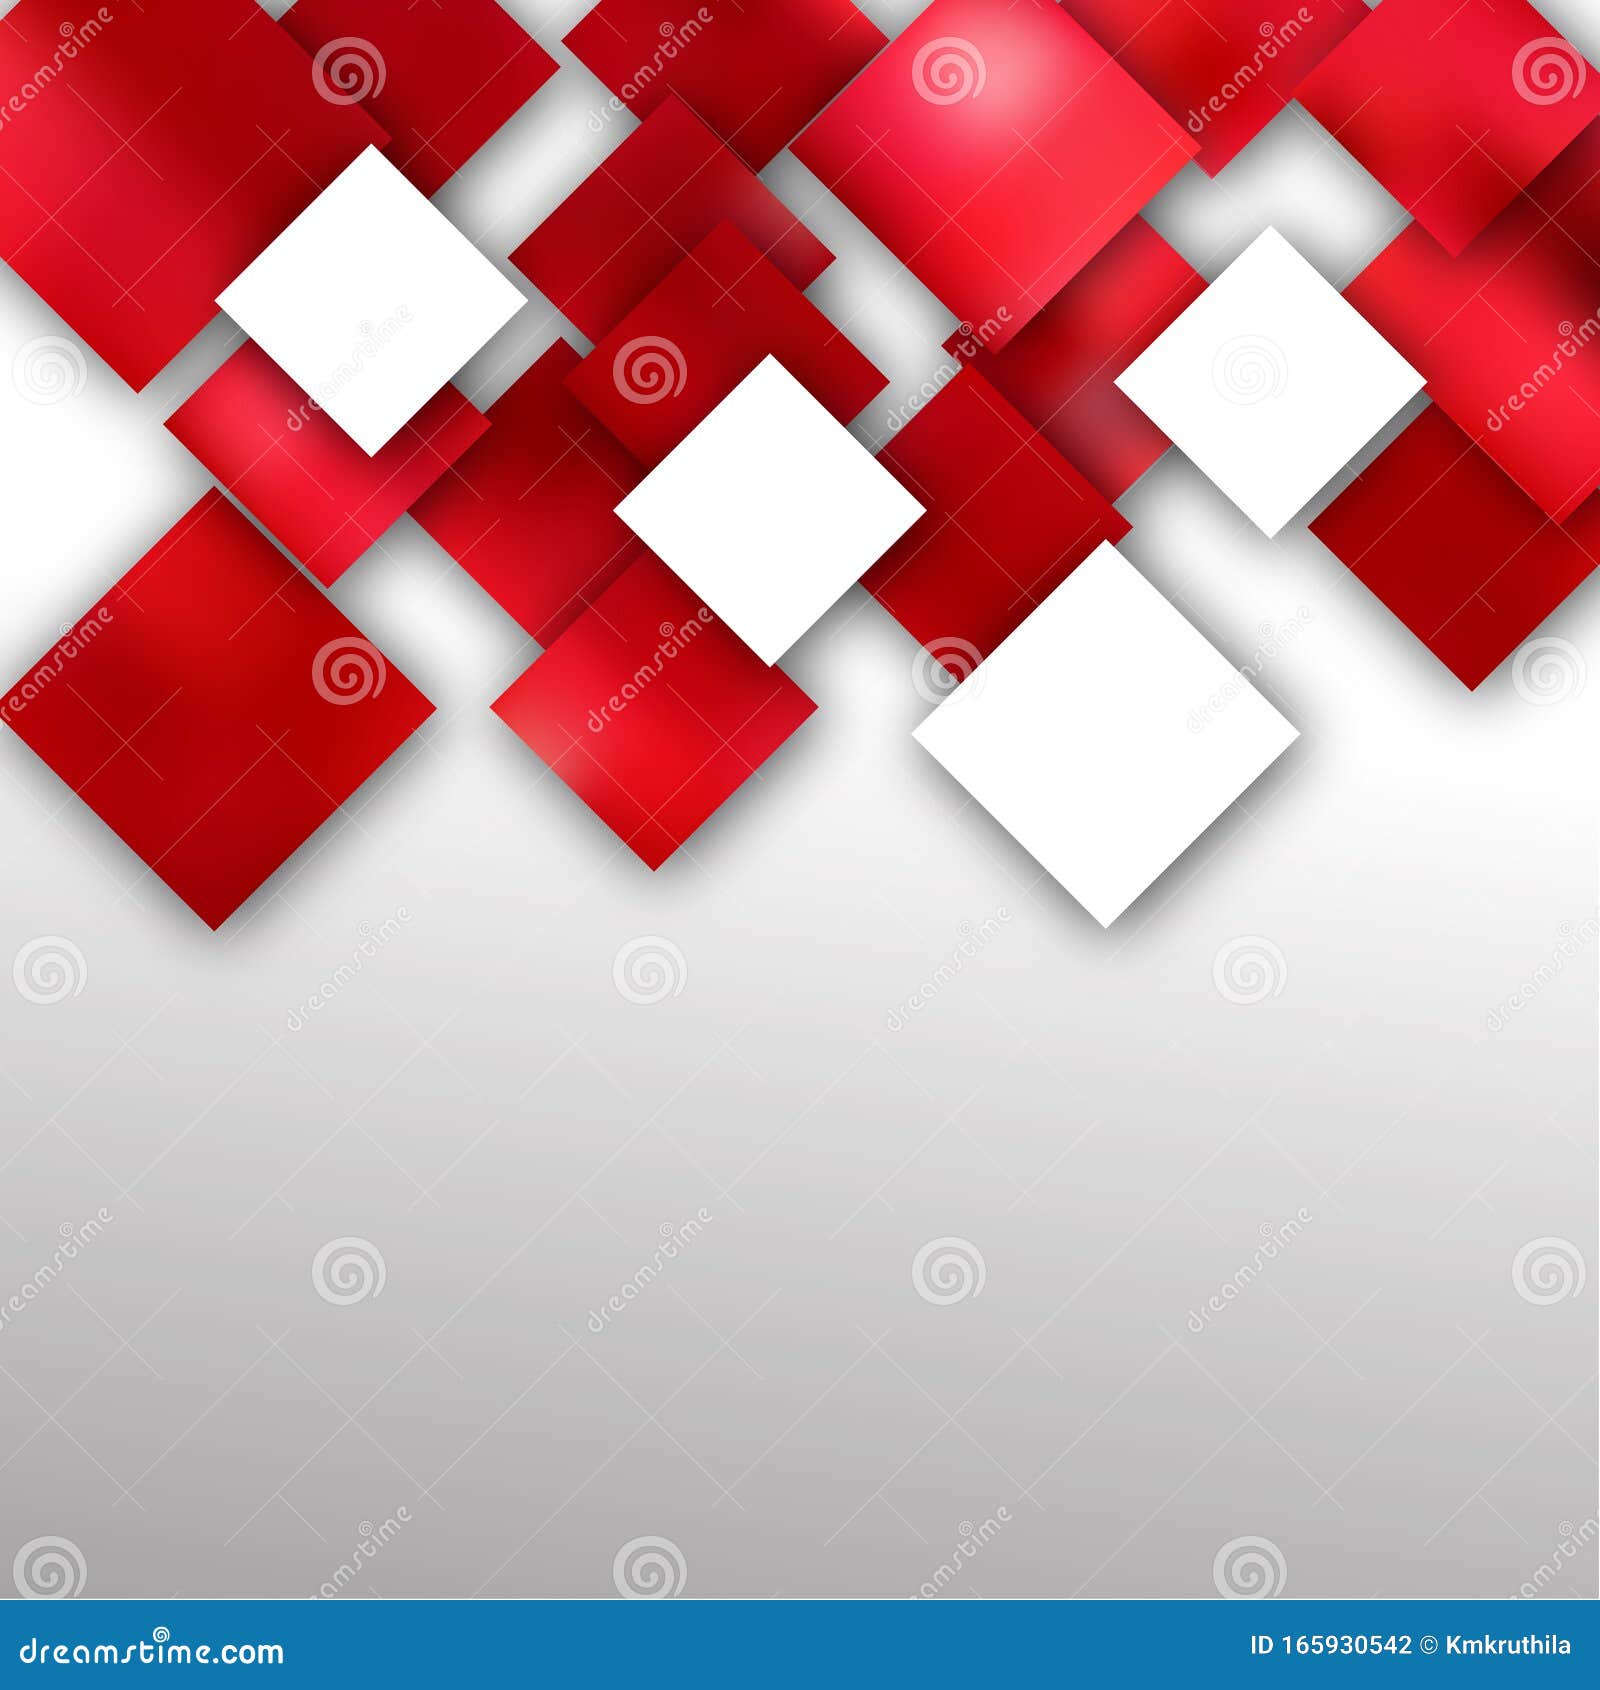 Hình nền Trường hợp vuông trừu tượng đỏ và trắng hiện đại: Bộ sưu tập hình nền Trường hợp vuông trừu tượng đỏ và trắng hiện đại mang lại cho bạn những trải nghiệm trực quan hoàn hảo. Thiết kế này tập trung vào sự kết hợp giữa các hình ảnh trừu tượng đầy tạo hóa với màu sắc đỏ trắng hài hòa, khẳng định vị thế của bạn trong những thiết kế sáng tạo và hiện đại.